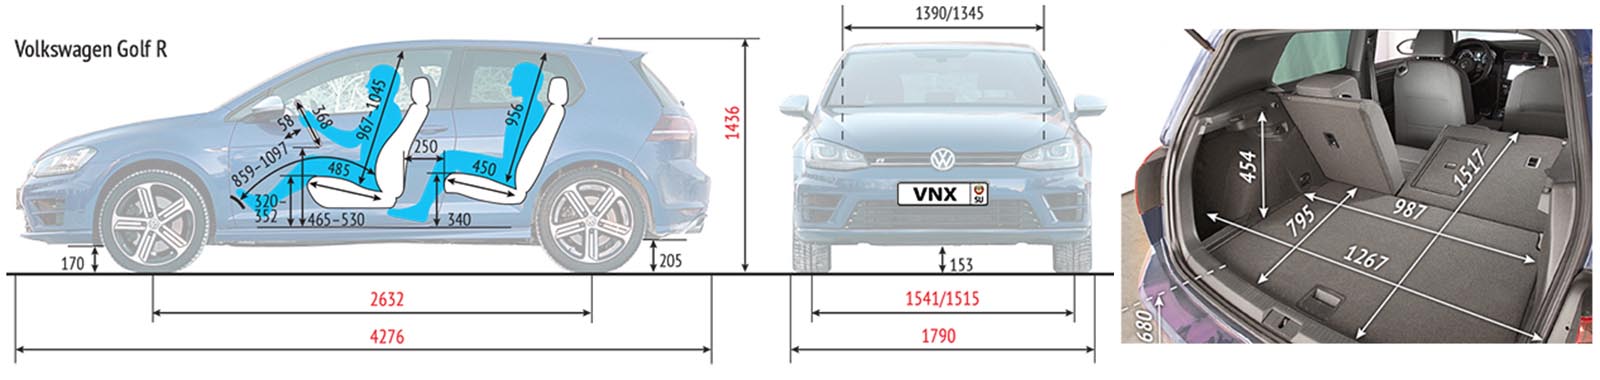 Габаритные размеры Фольксваген Гольф 7 Р (dimensions VW Golf R 2014)